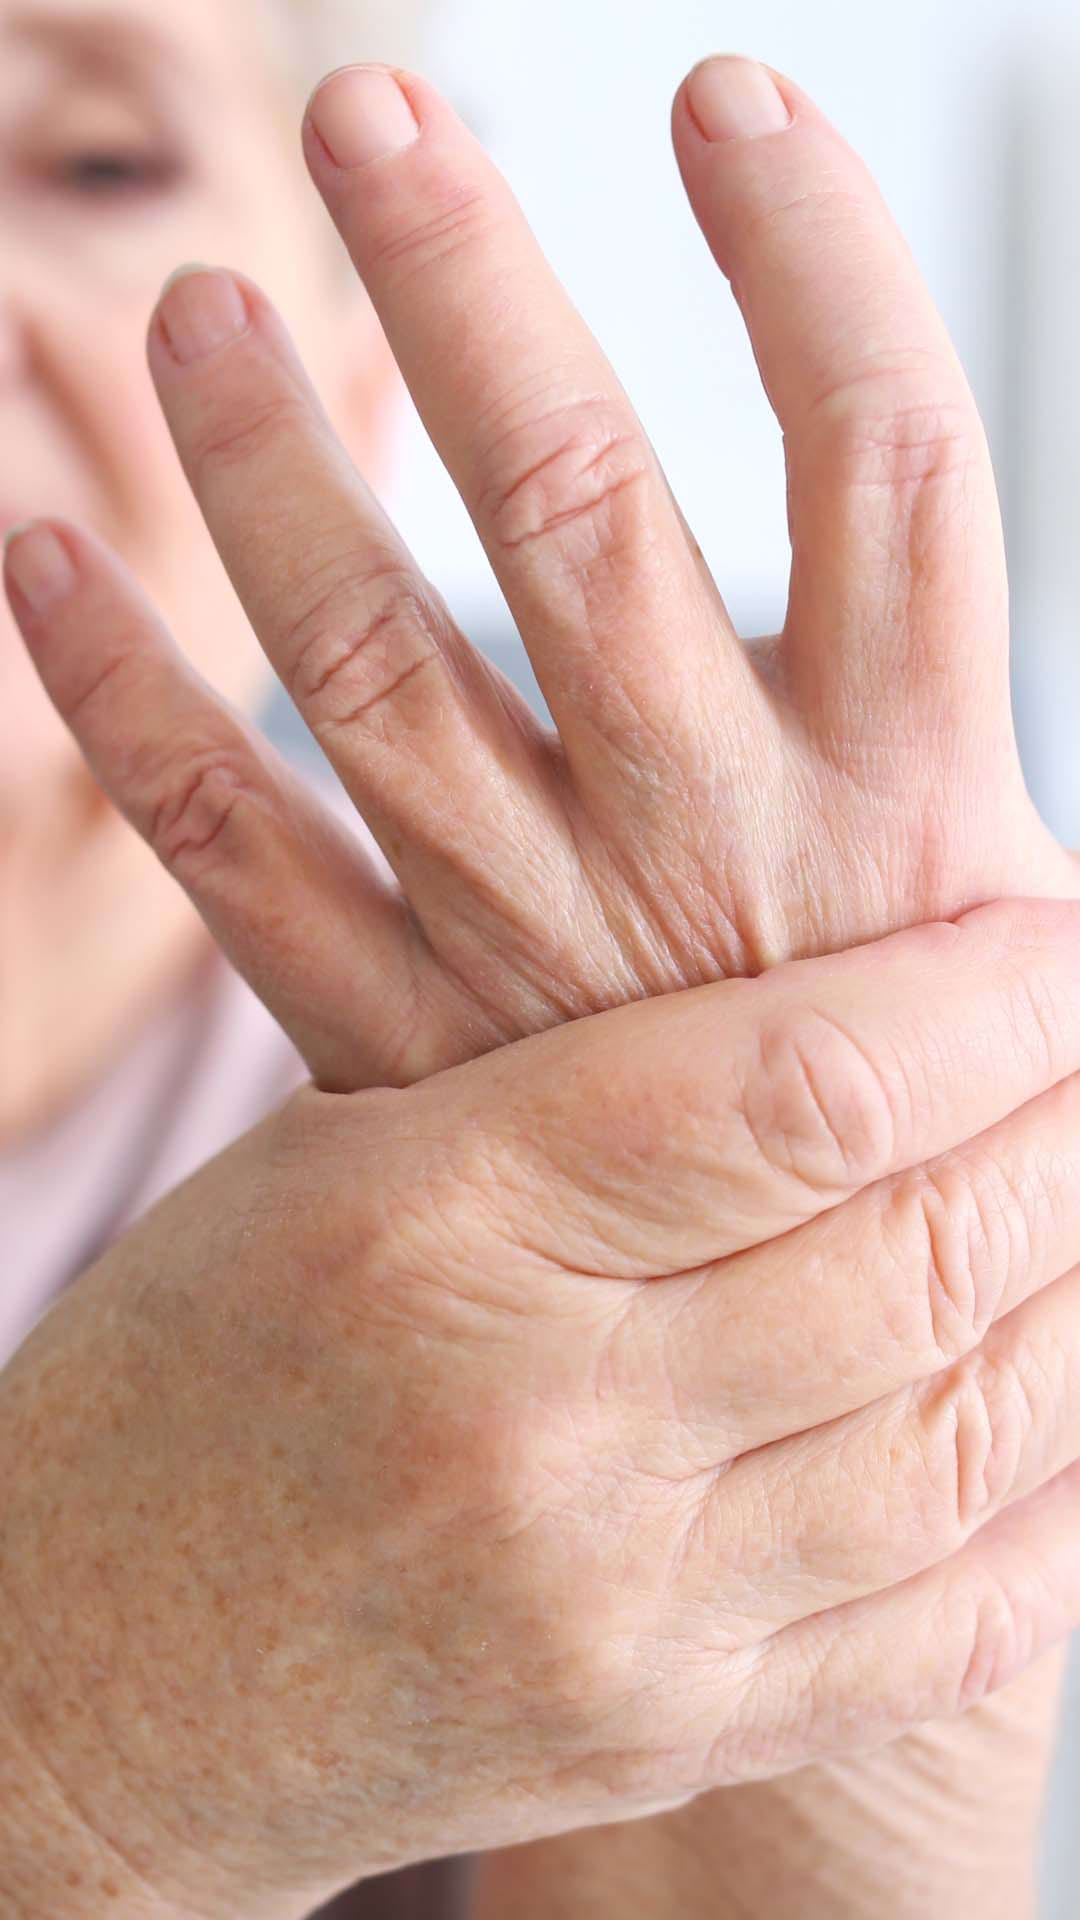 Ce este Artrita : Cauze, simptome si tratament | Bioclinica